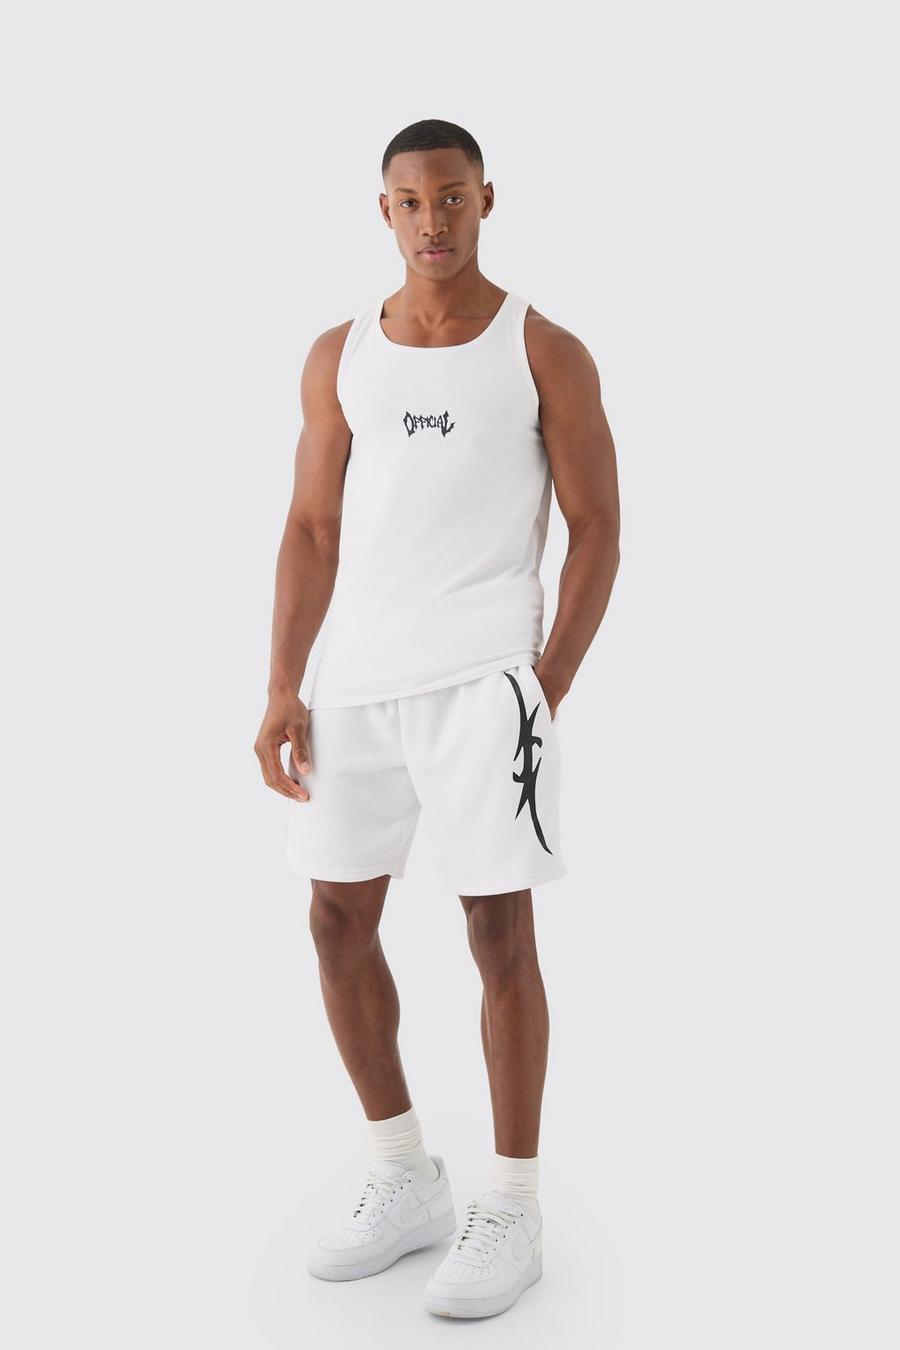 Conjunto de pantalón corto y camiseta sin mangas con estampado gráfico Official ajustado al músculo, White